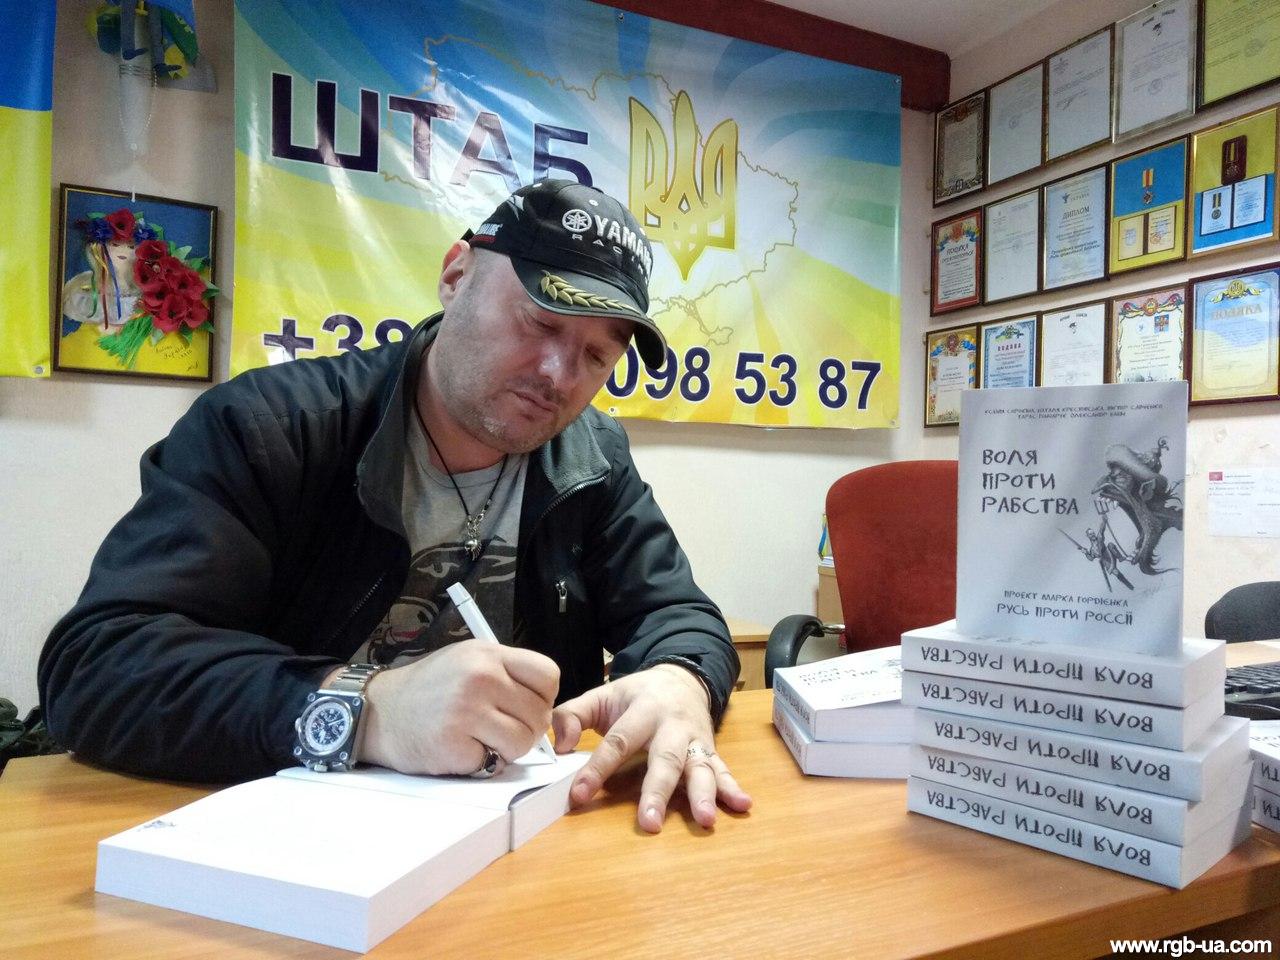 "Патриотические пираты" Одессы отправили Путину книгу: "Фюреру российского Мордора, предводителю отмороженных подонков с глубоким презрением и ненавистью от украинского народа"